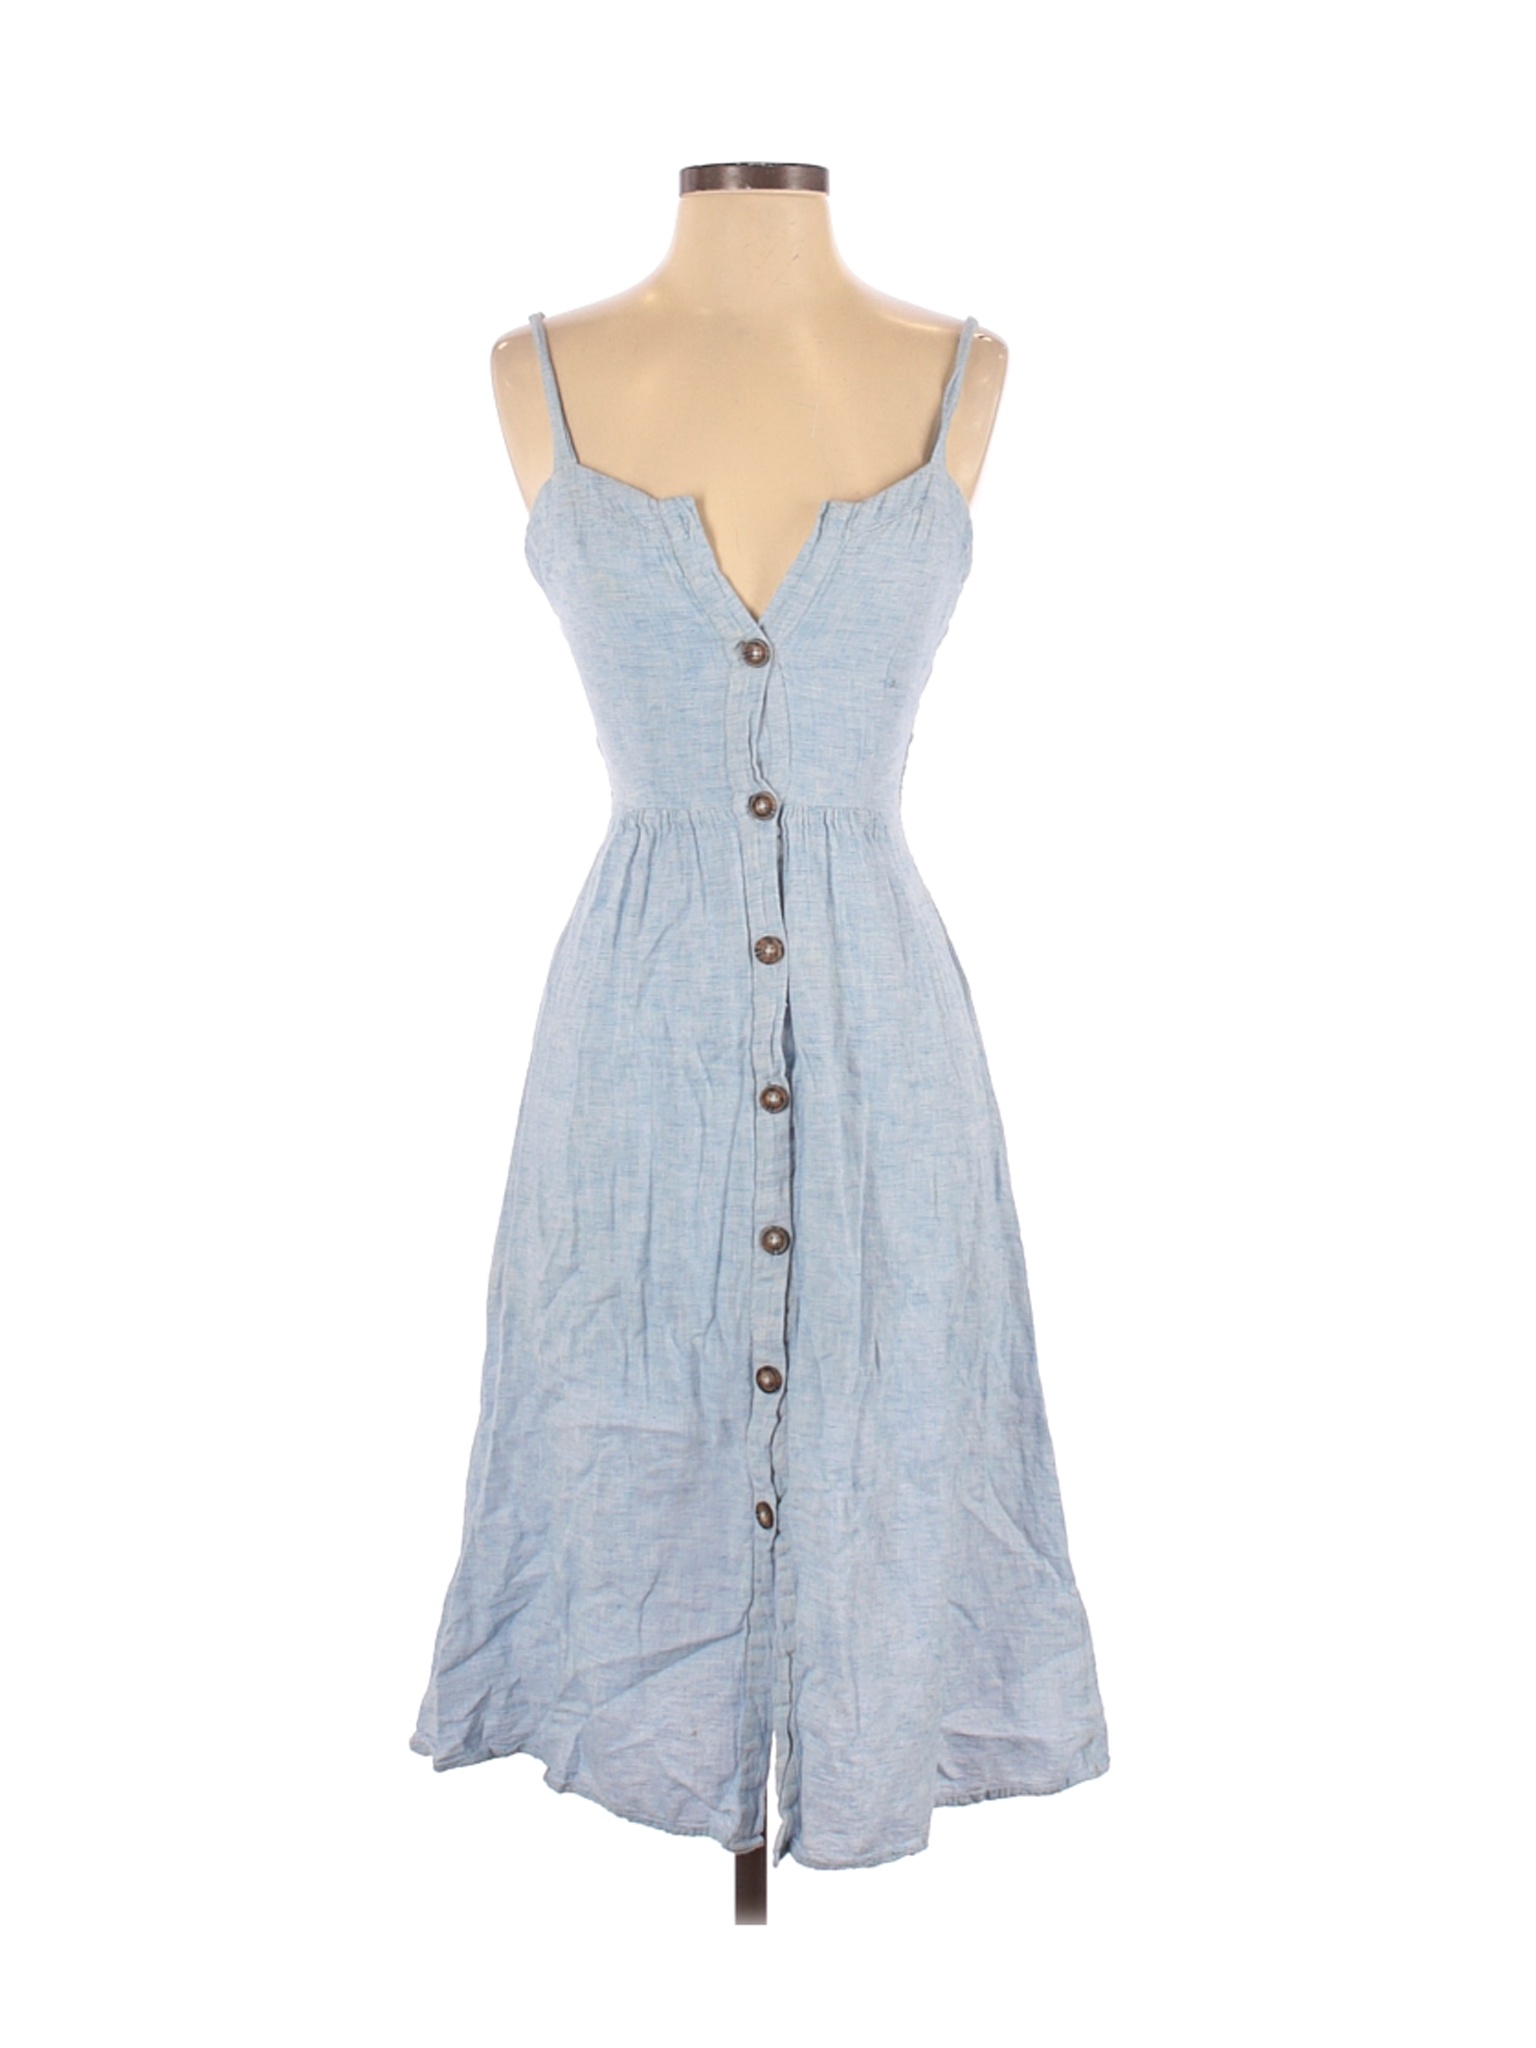 Sienna Sky Women Blue Casual Dress S | eBay